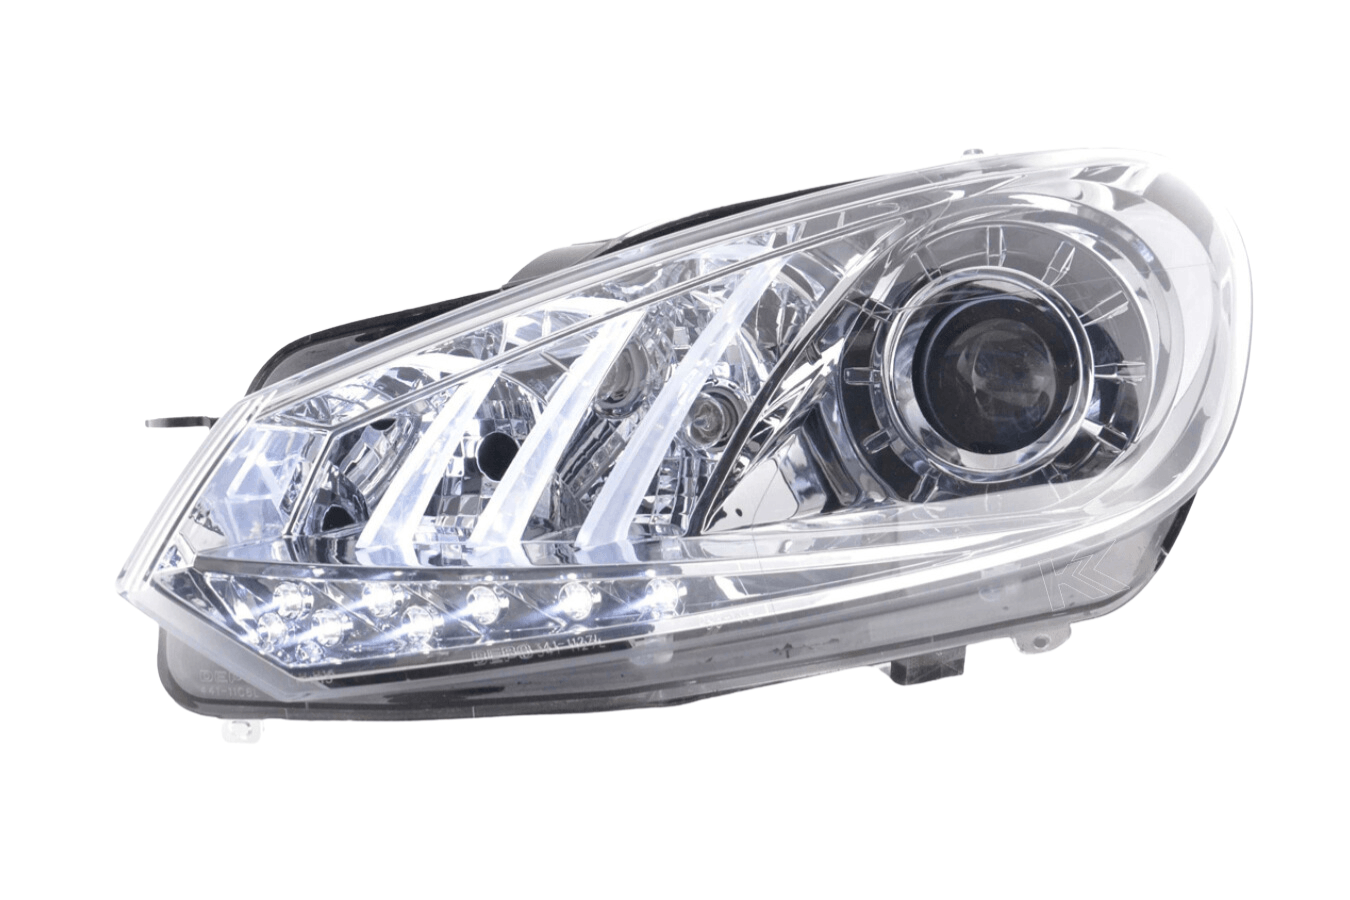 Volkswagen Golf 6 Chrome DRL Headlights (2008 - 2014) - K2 Industries